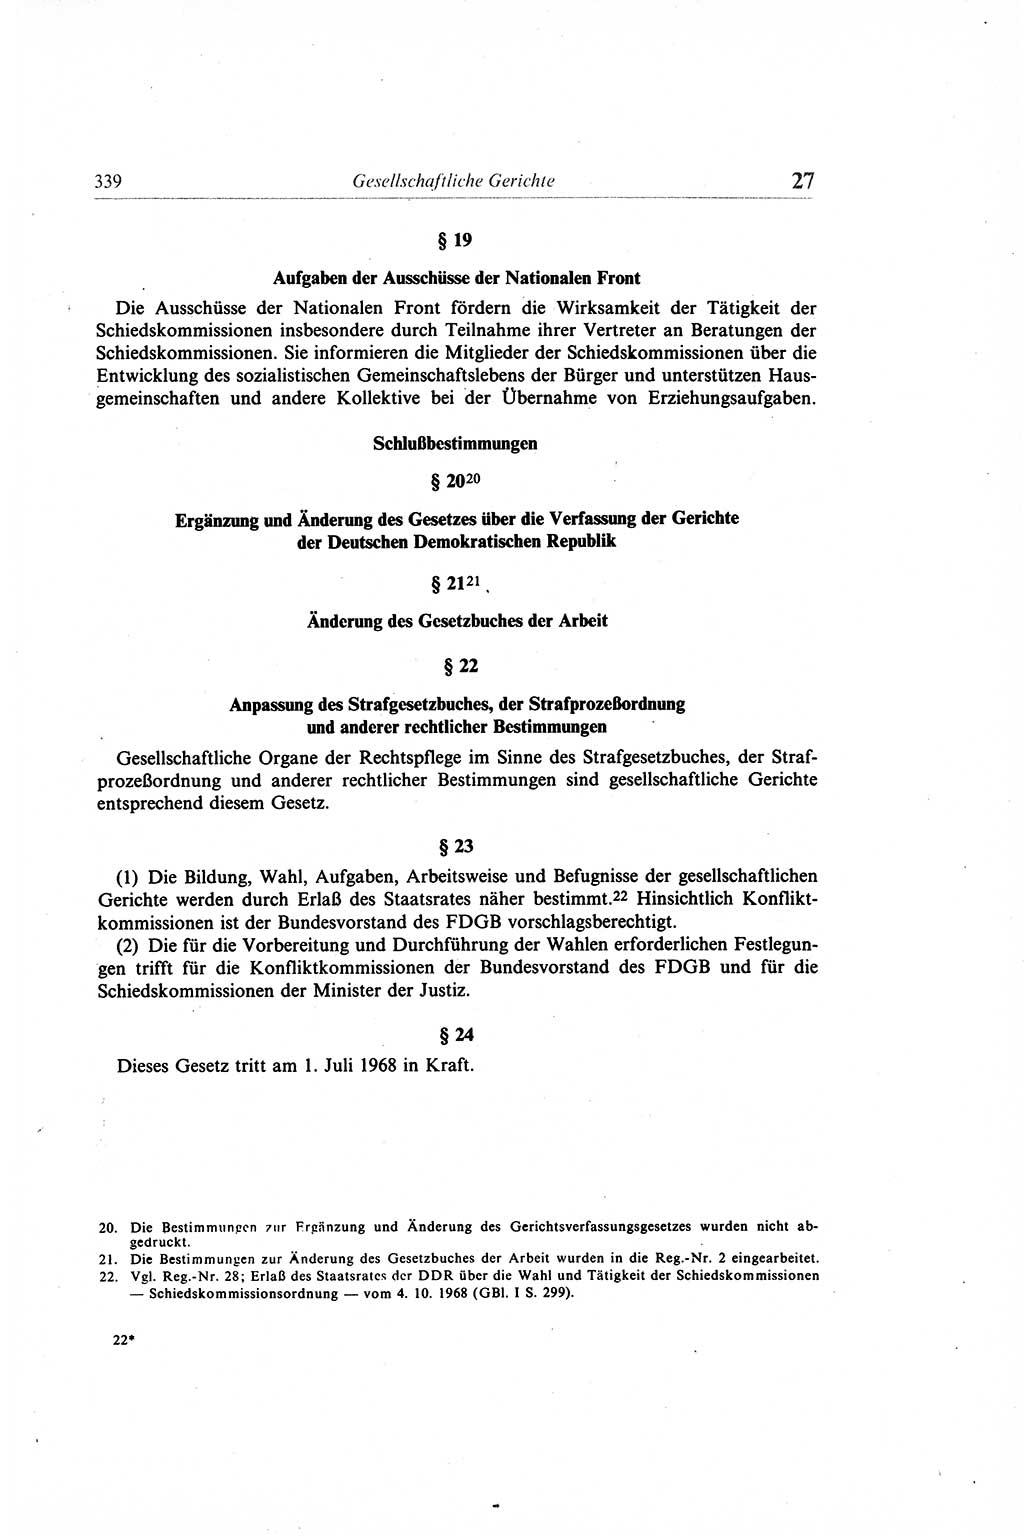 Gesetzbuch der Arbeit (GBA) und andere ausgewählte rechtliche Bestimmungen [Deutsche Demokratische Republik (DDR)] 1968, Seite 339 (GBA DDR 1968, S. 339)